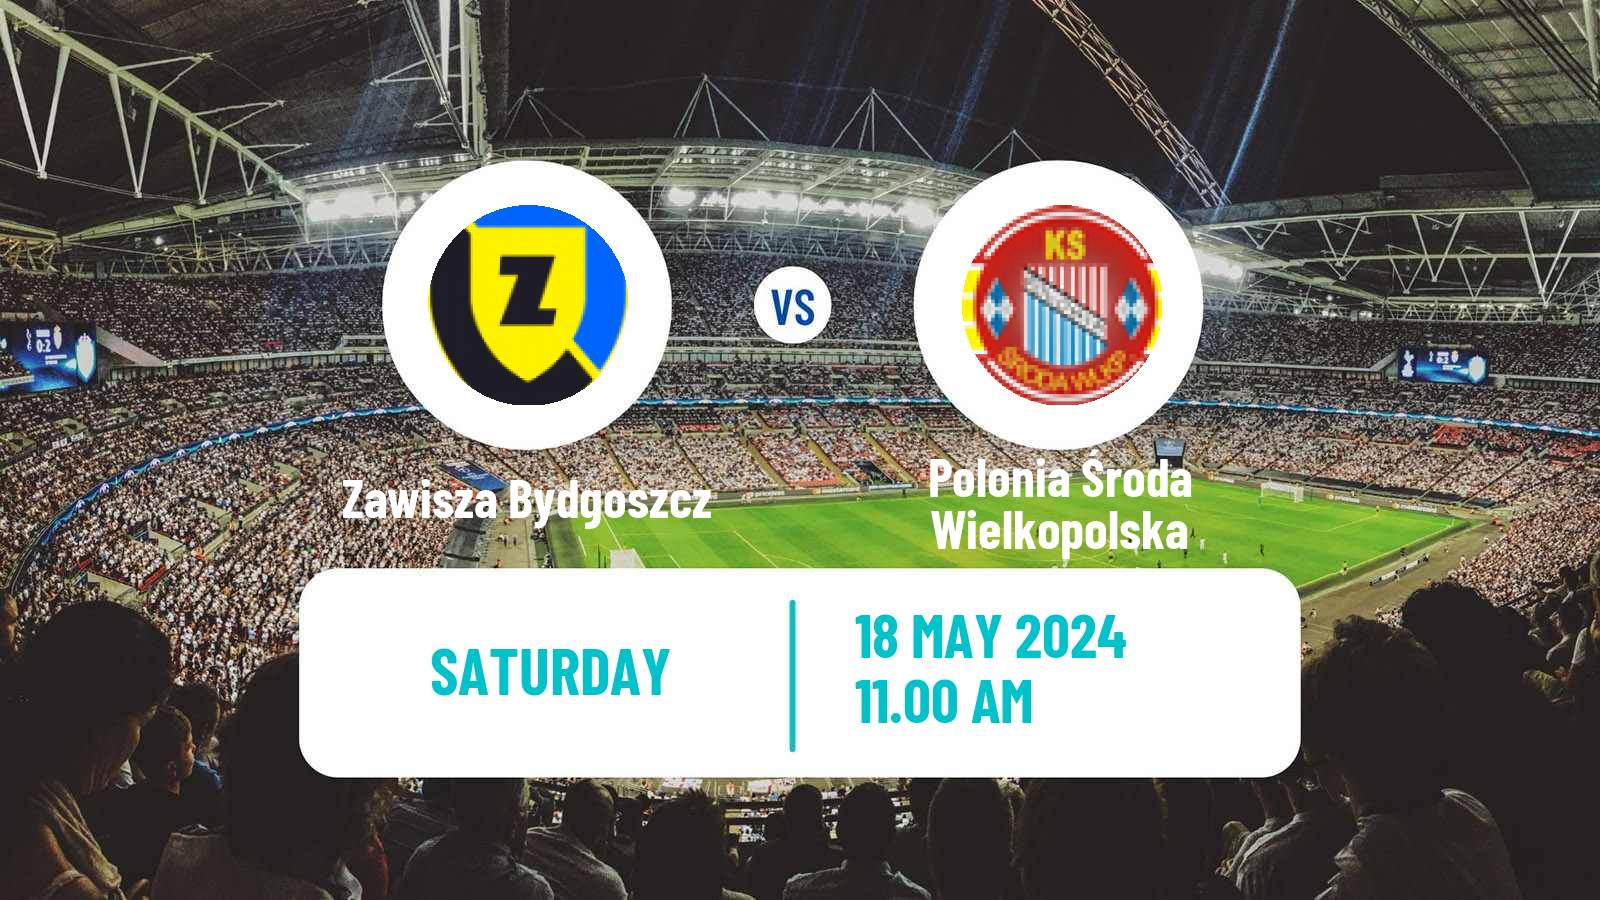 Soccer Polish Division 3 - Group II Zawisza Bydgoszcz - Polonia Środa Wielkopolska